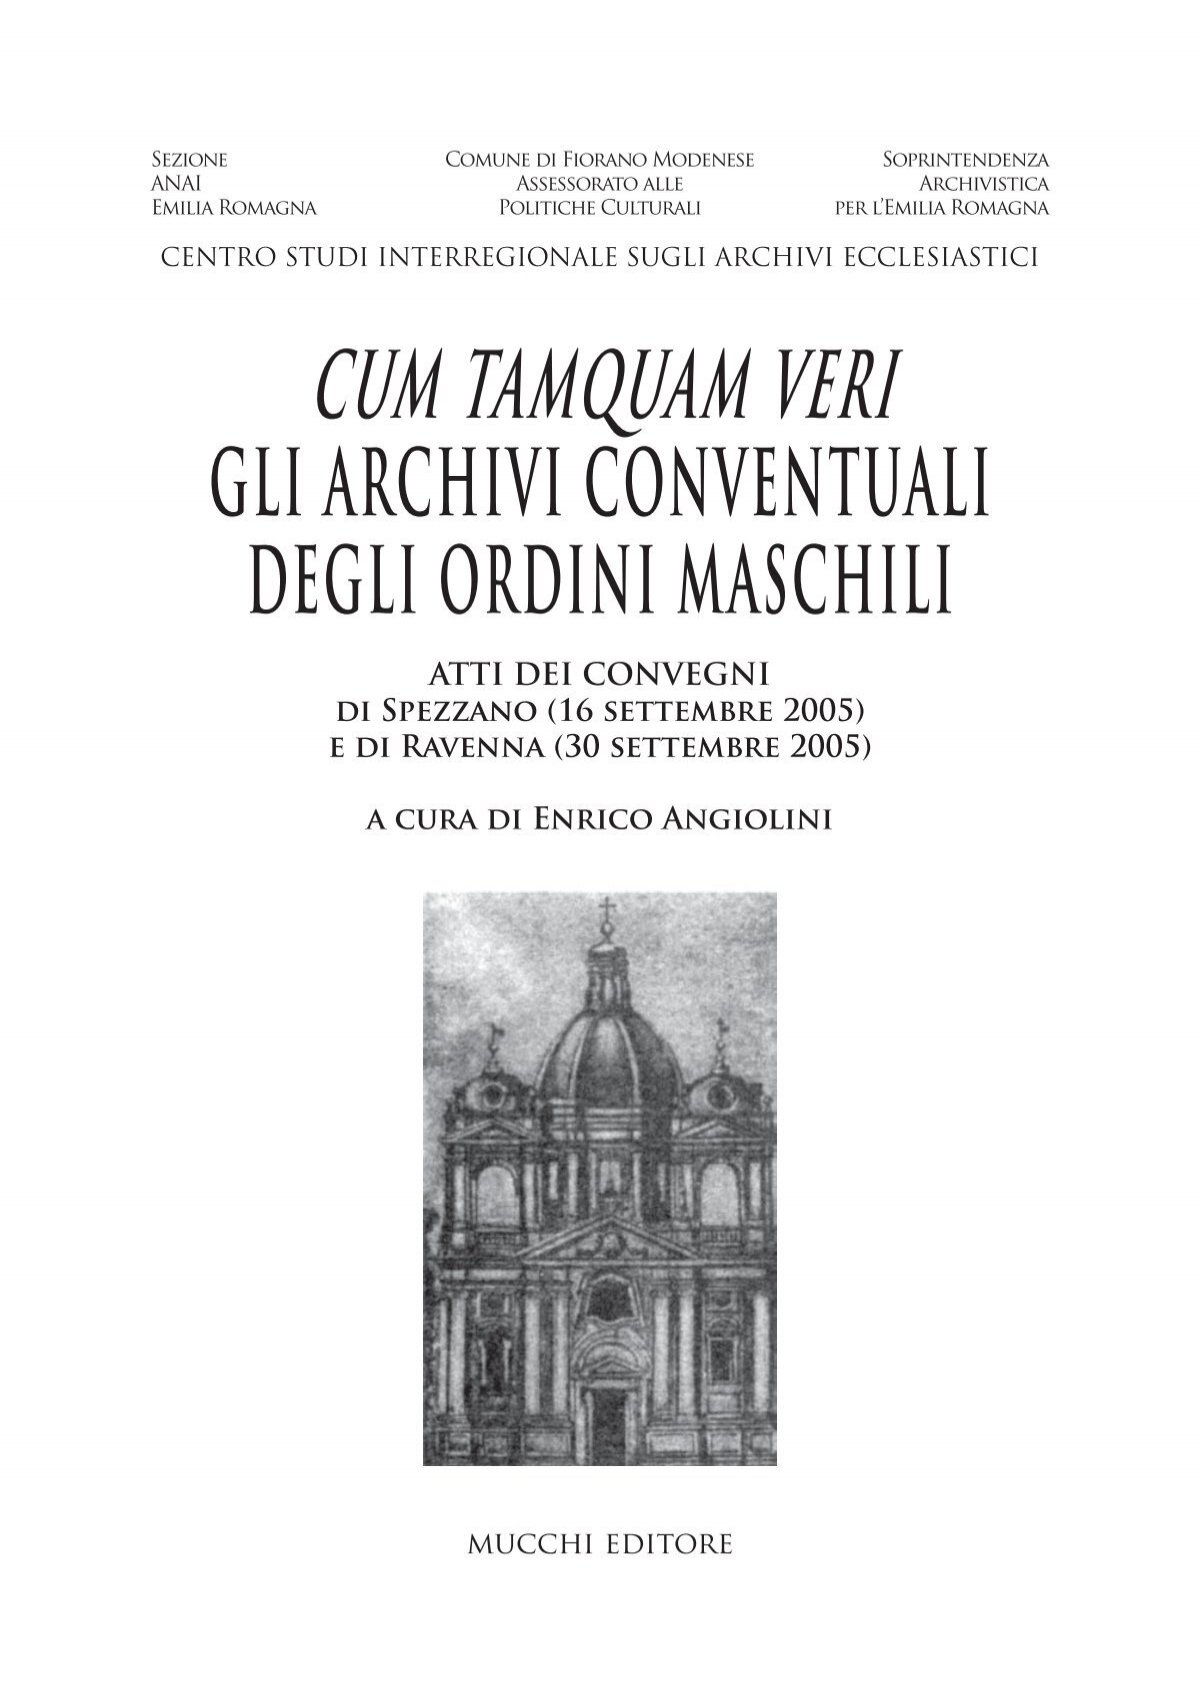 Cum Tamquam Veri 2005 - Soprintendenza archivistica per l'Emilia